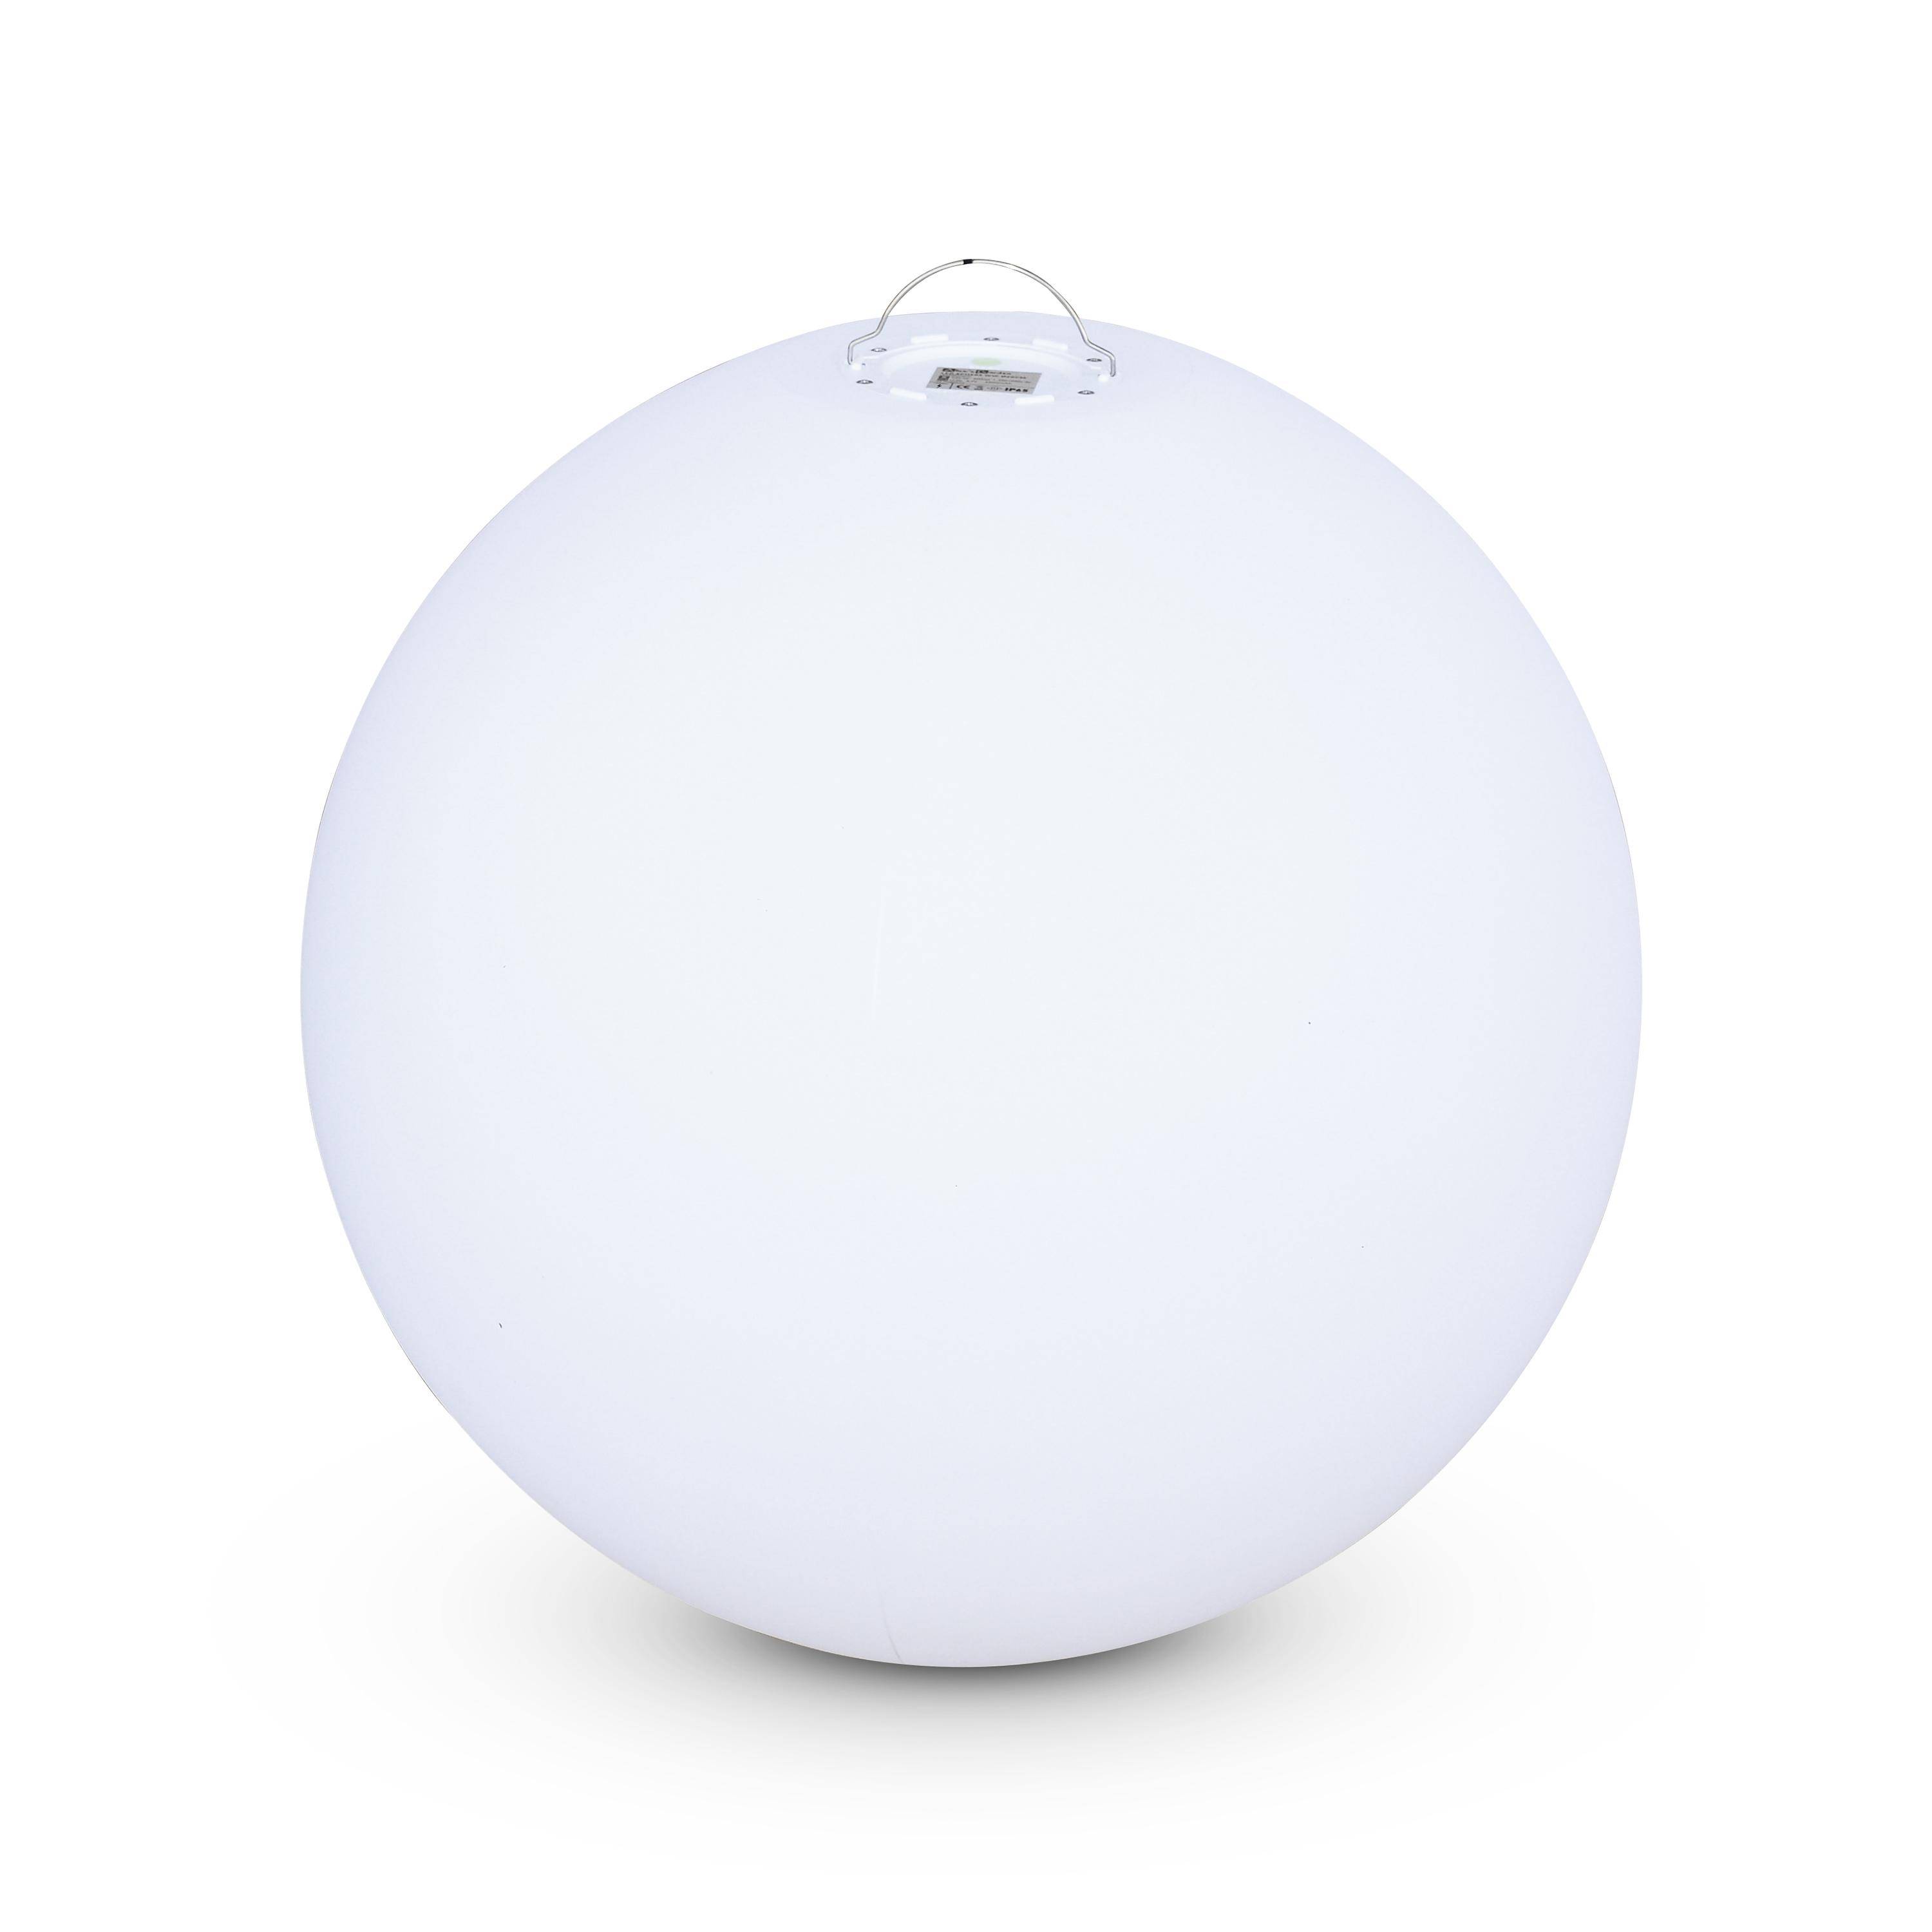 LED Bollamp 60cm – Decoratieve lichtbol, Ø60cm, warm wit, afstandsbediening Photo2